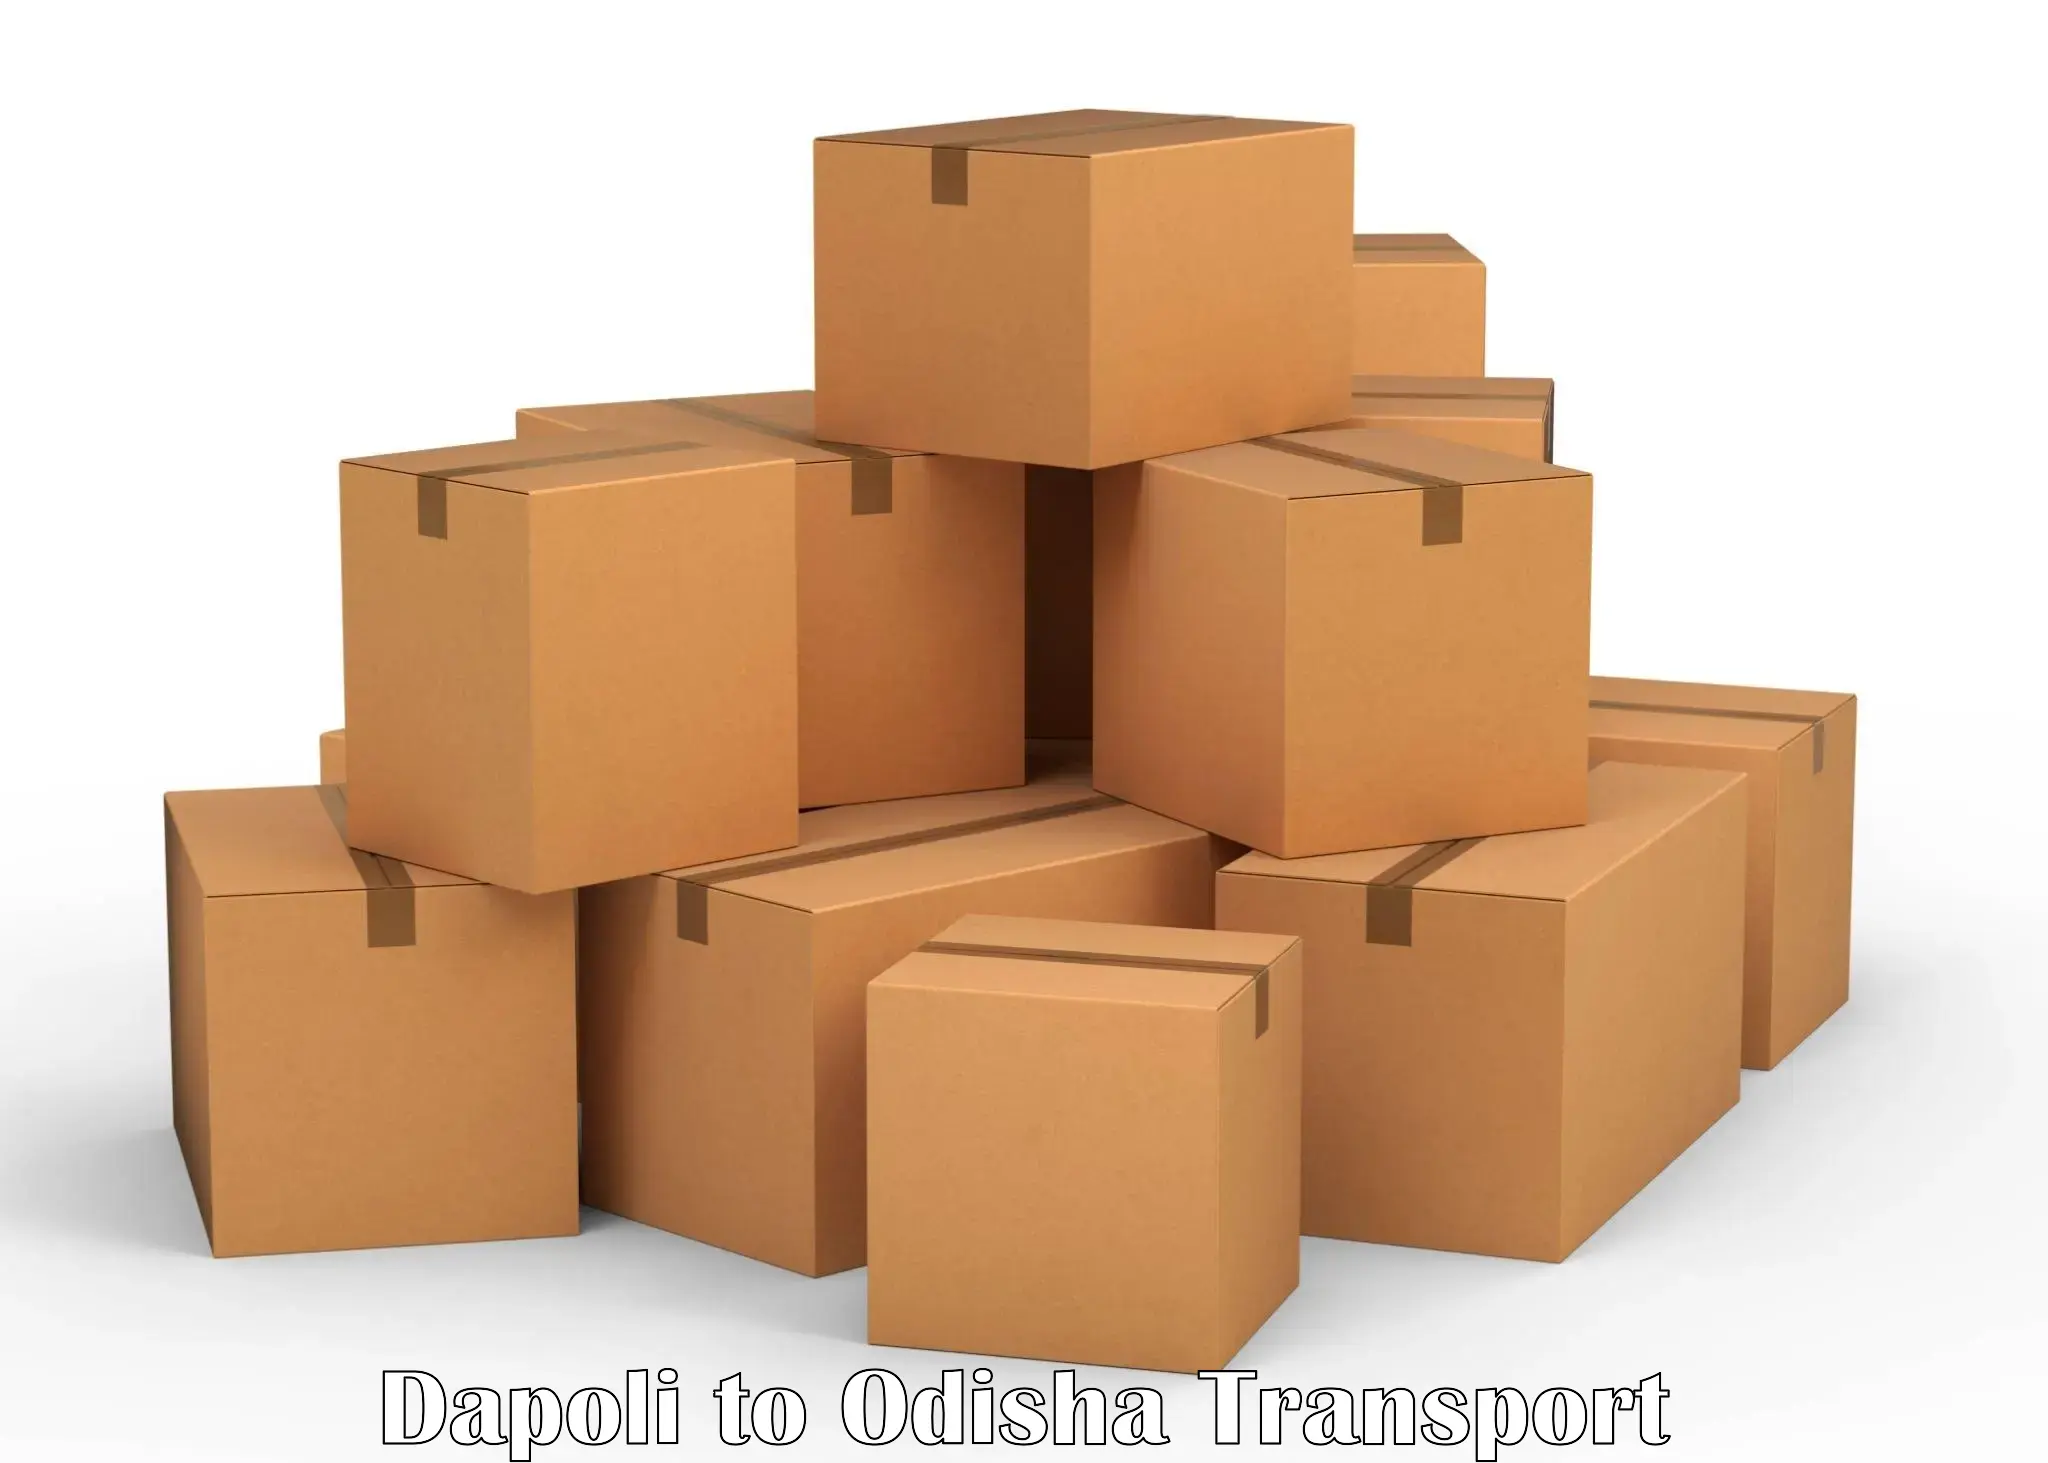 India truck logistics services Dapoli to Patkura